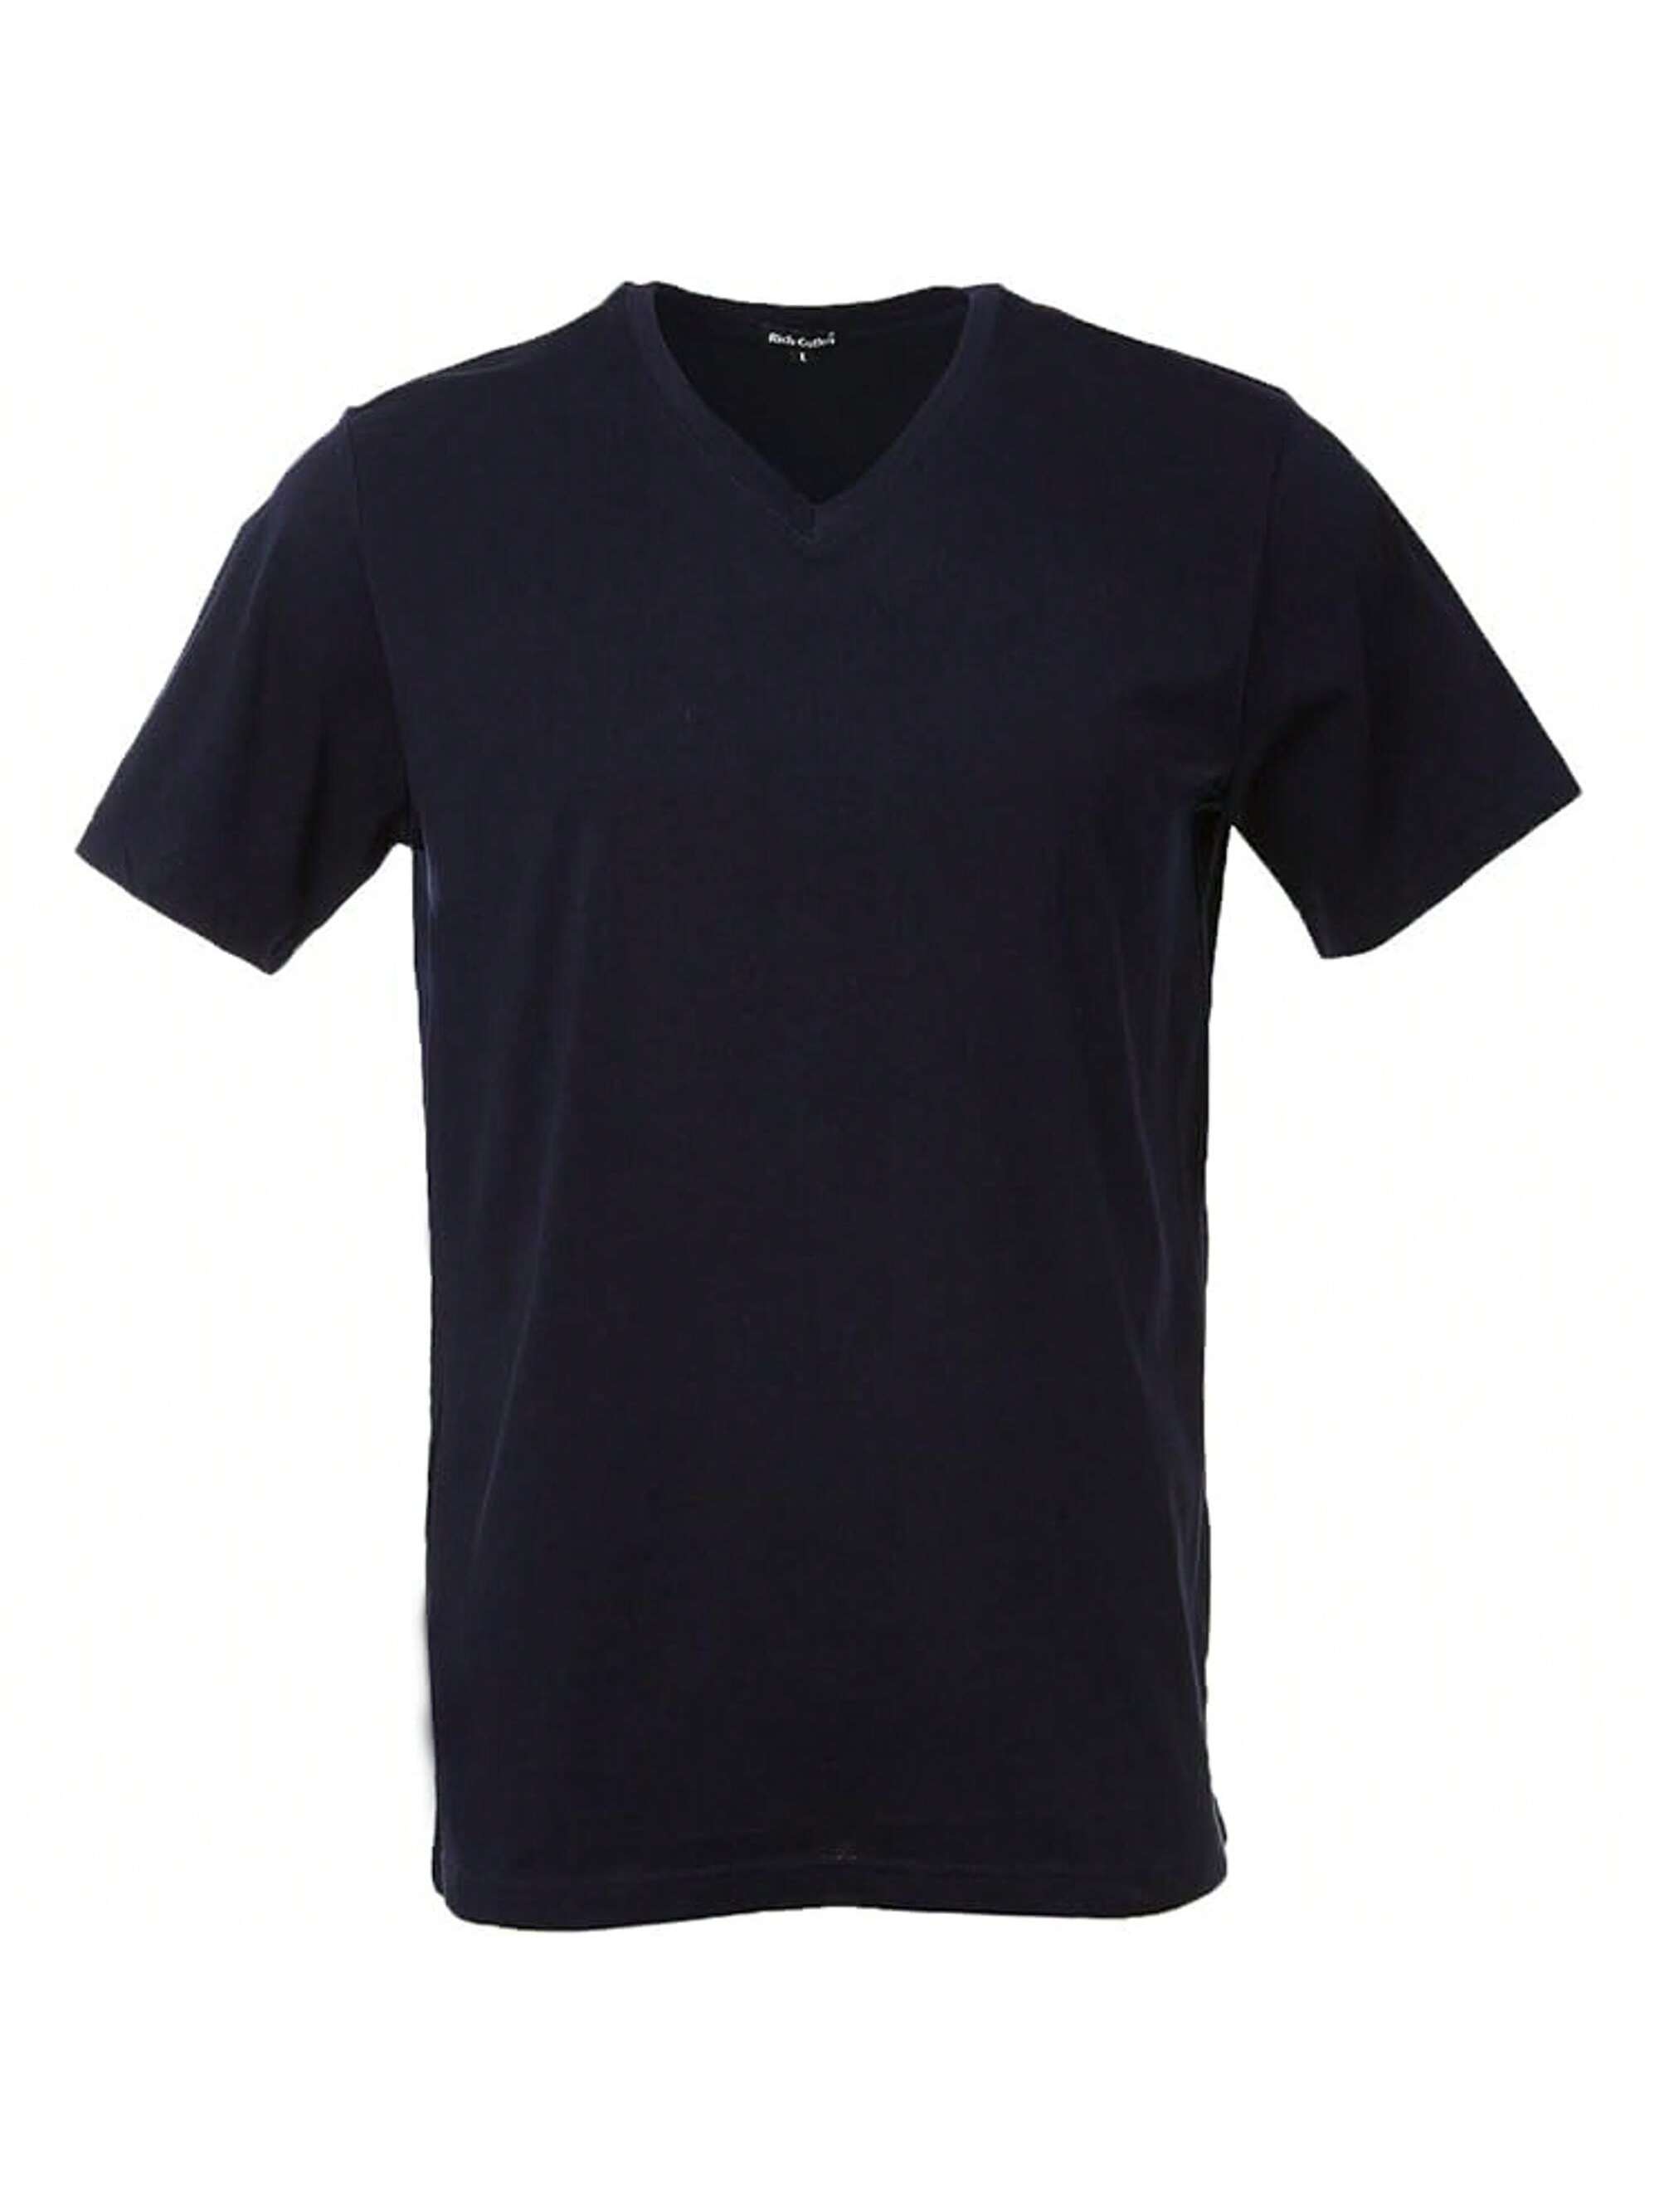 Мужская хлопковая футболка премиум-класса с v-образным вырезом Rich Cotton BLK-M, военно-морской футболка мужская с v обр вырезом victory 150 темно синяя размер m